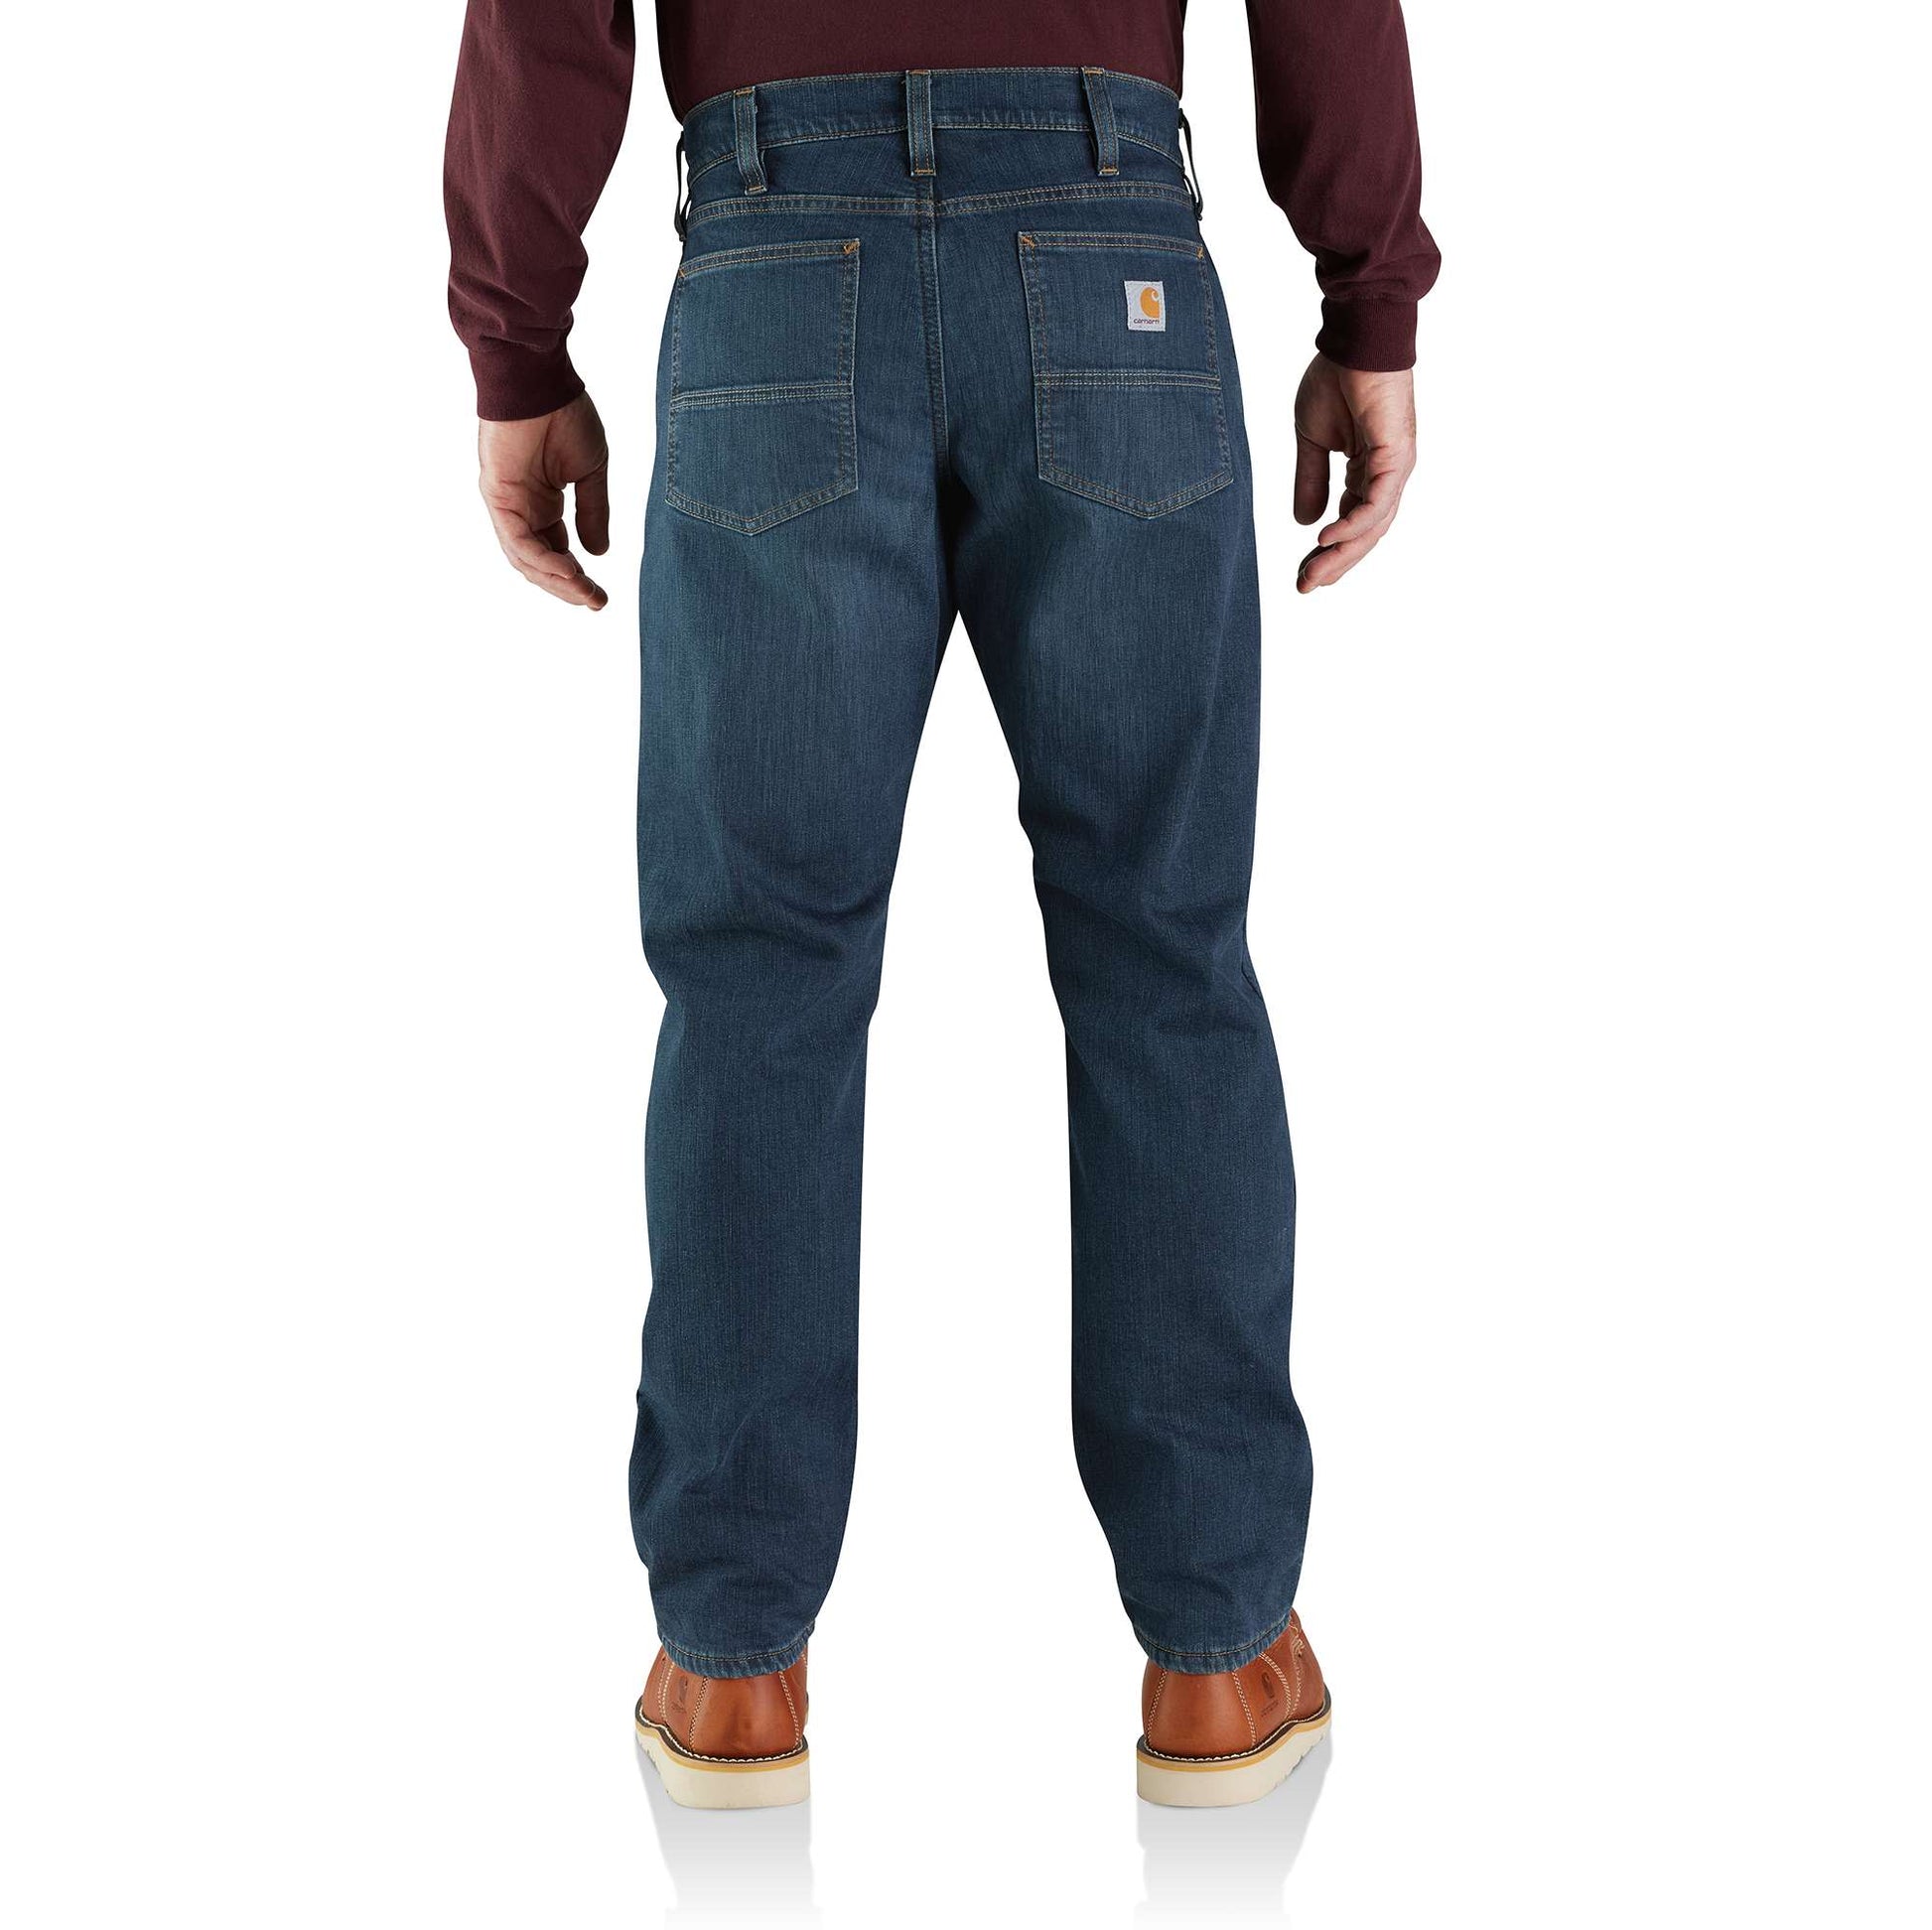 Carhartt fleece lined pants - Gem